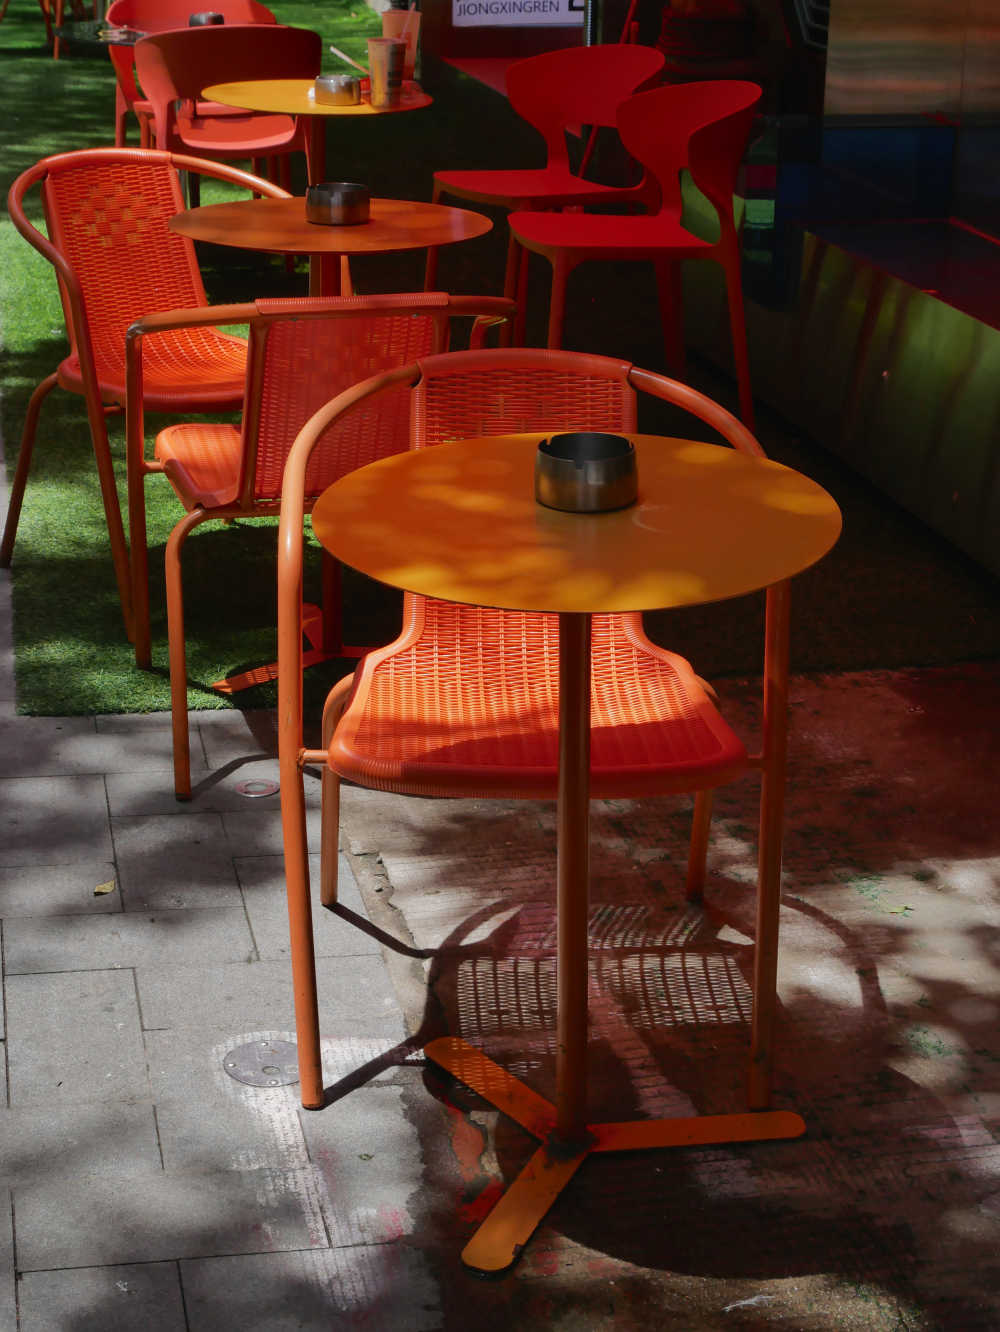 奶茶店外的橙色桌椅